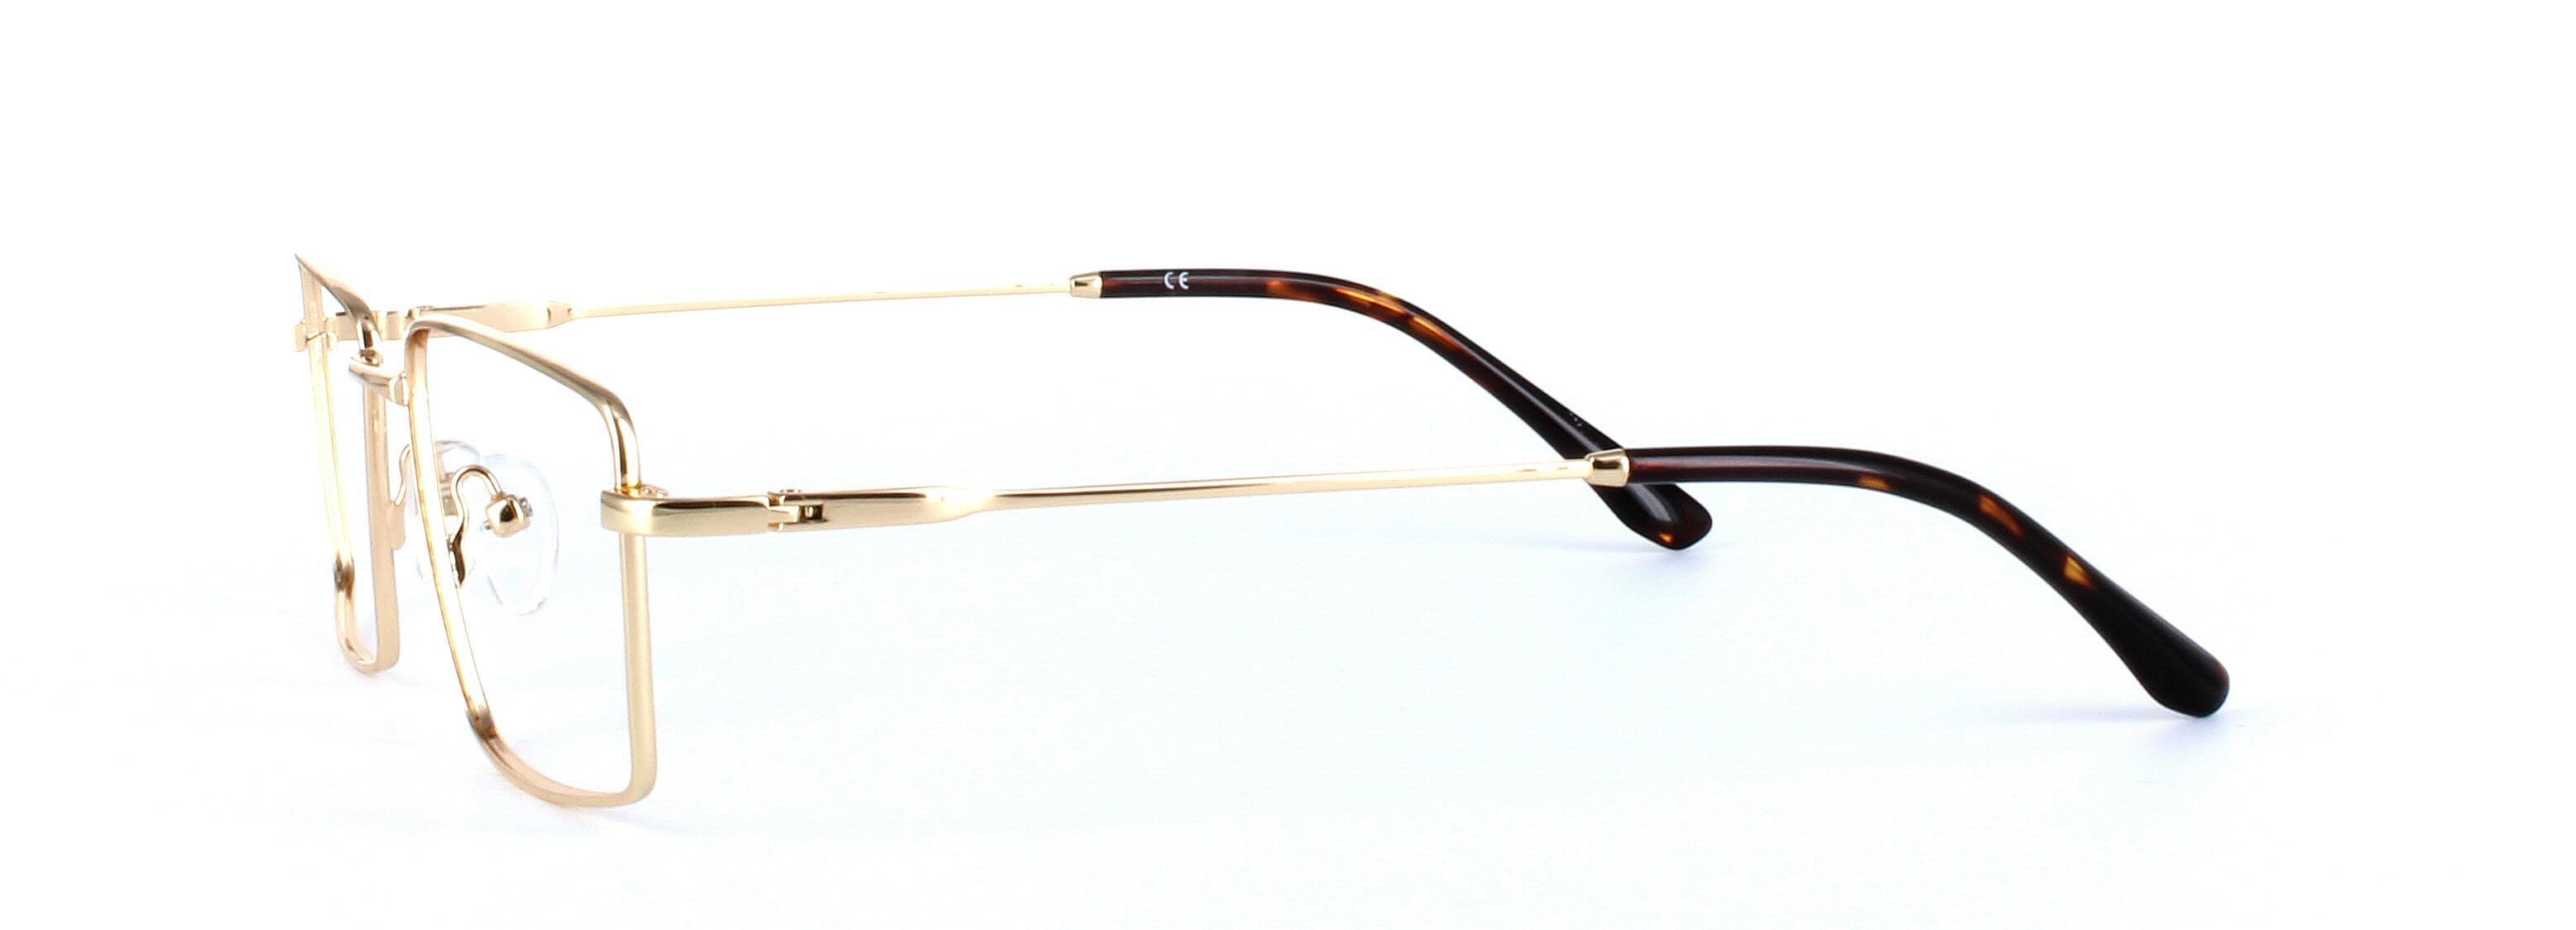 Catan Gold Full Rim Rectangular Metal Glasses - Image View 2